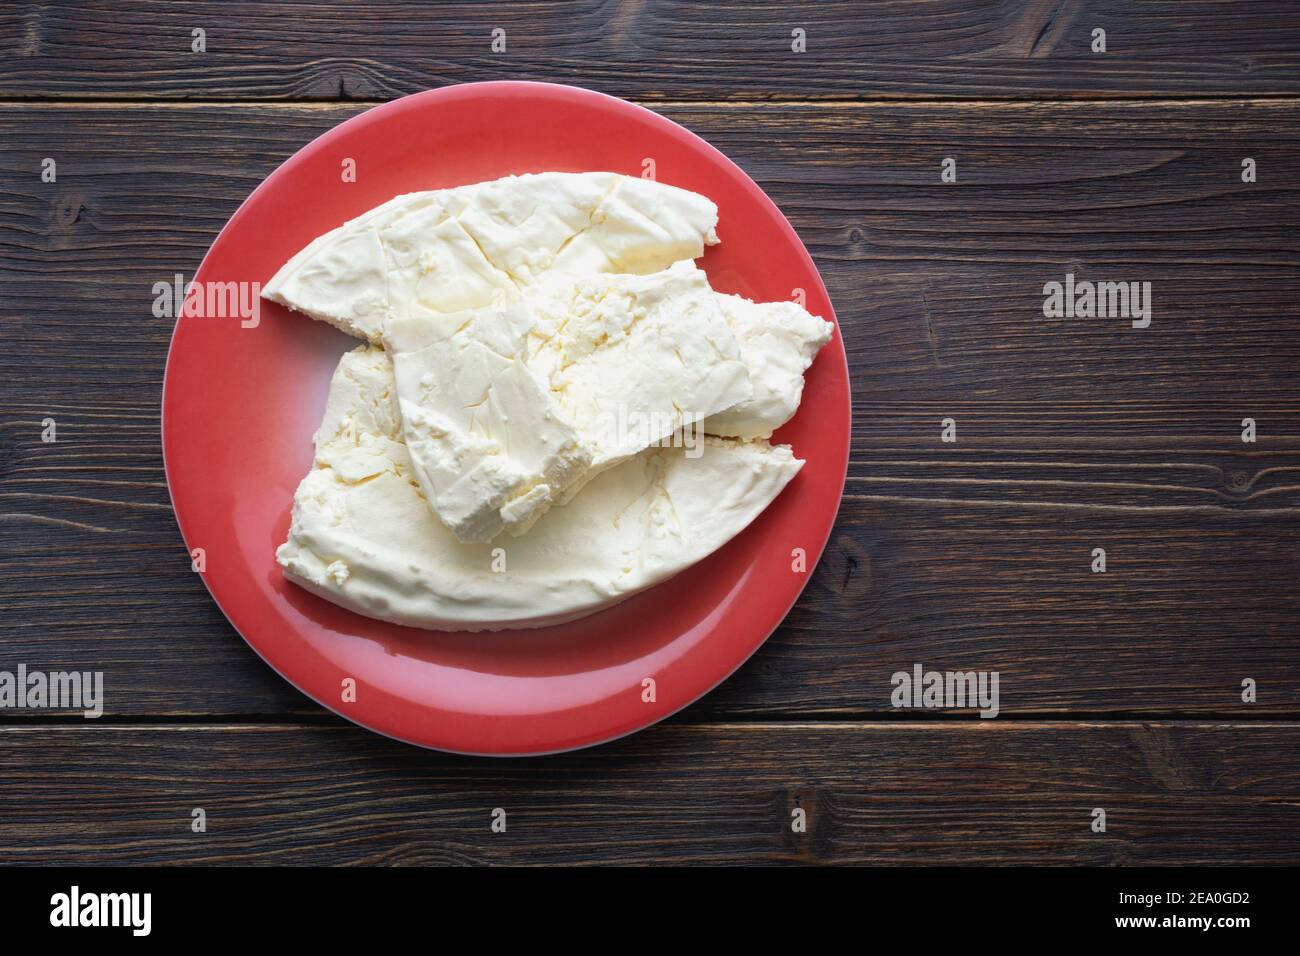 Cuisine des Balkans. Monténégro. Le fromage Pljevaljski est un fromage blanc doux local dans une assiette rouge sur une table rustique sombre. Copier l'espace Banque D'Images